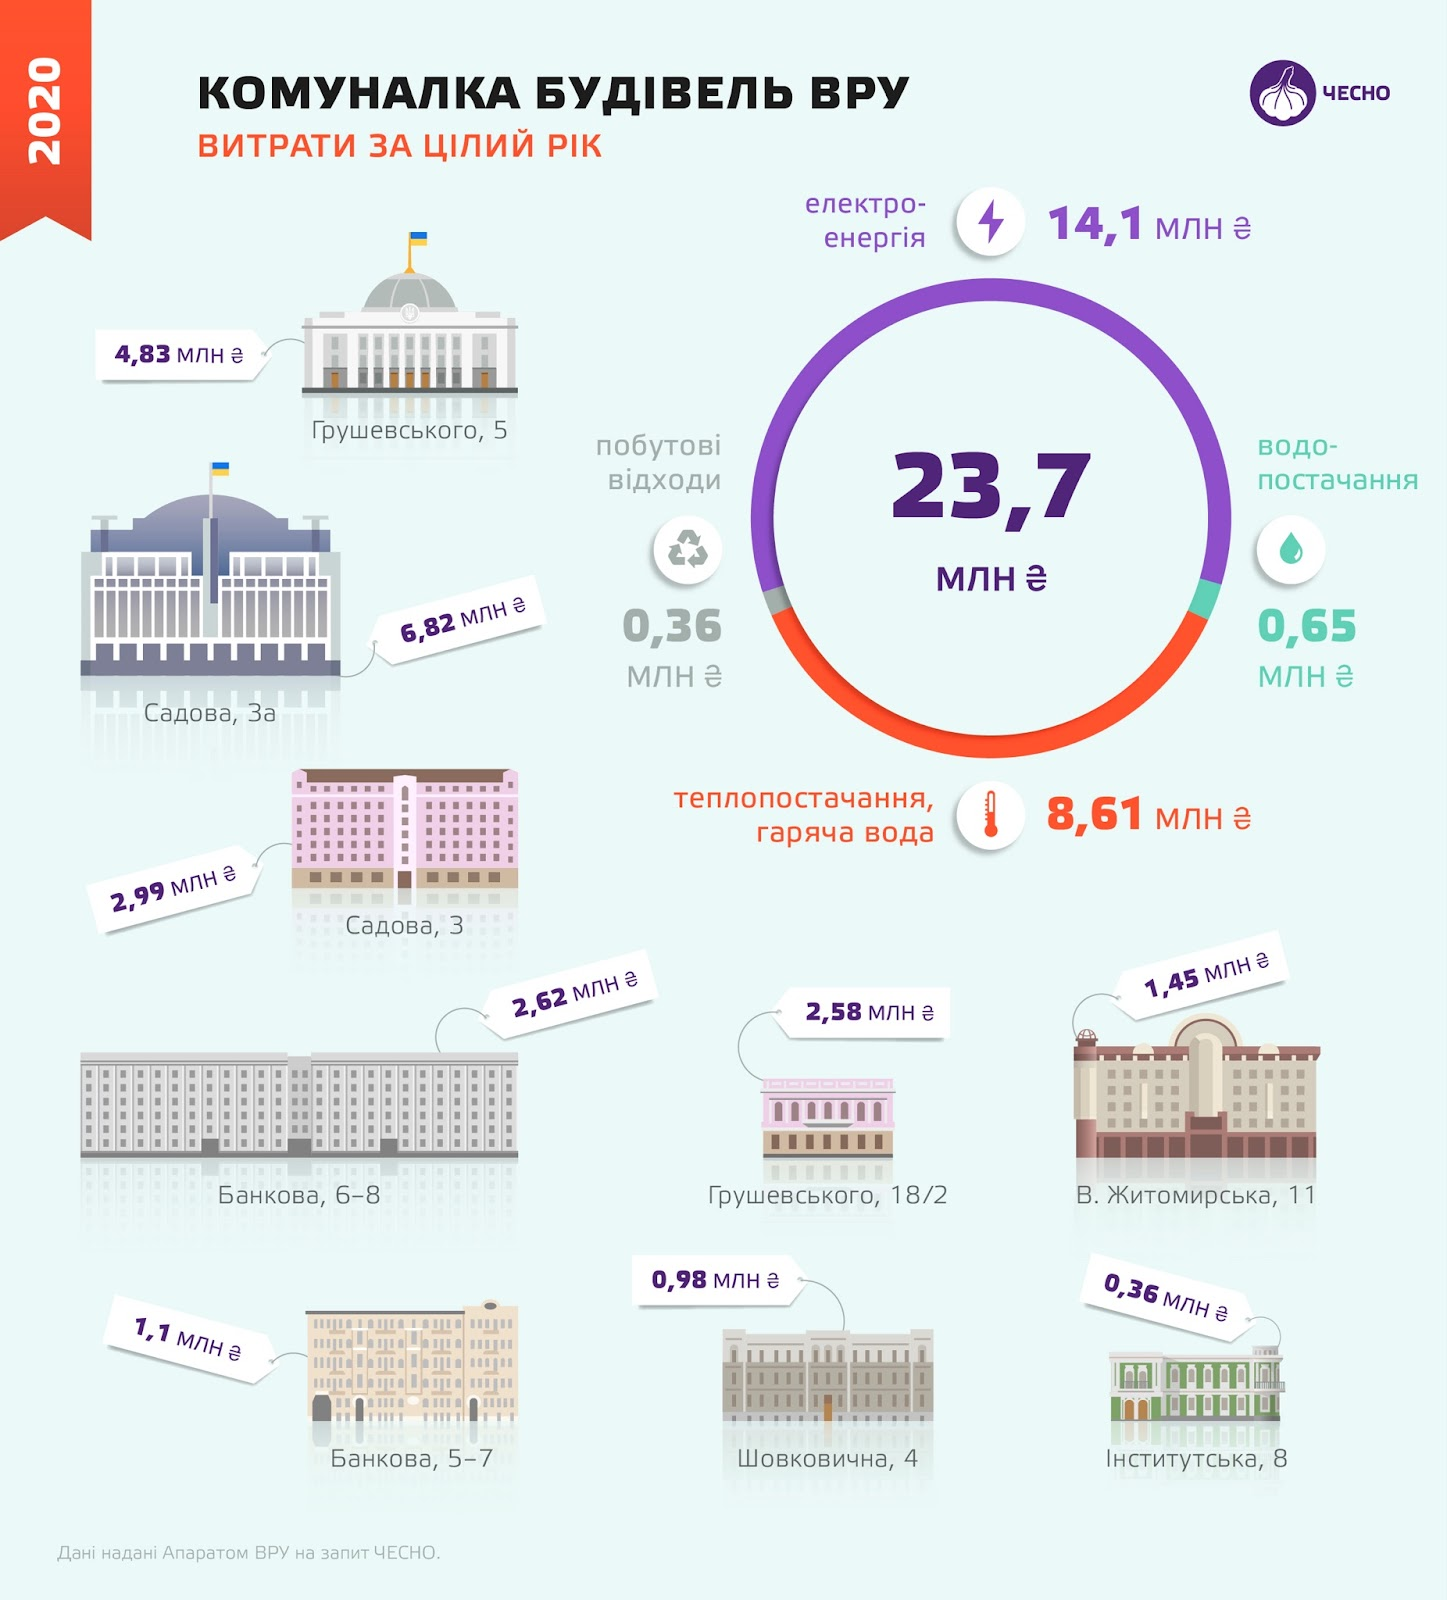 Комунальні платежі всіх будівель Верховної Ради України за цілий рік